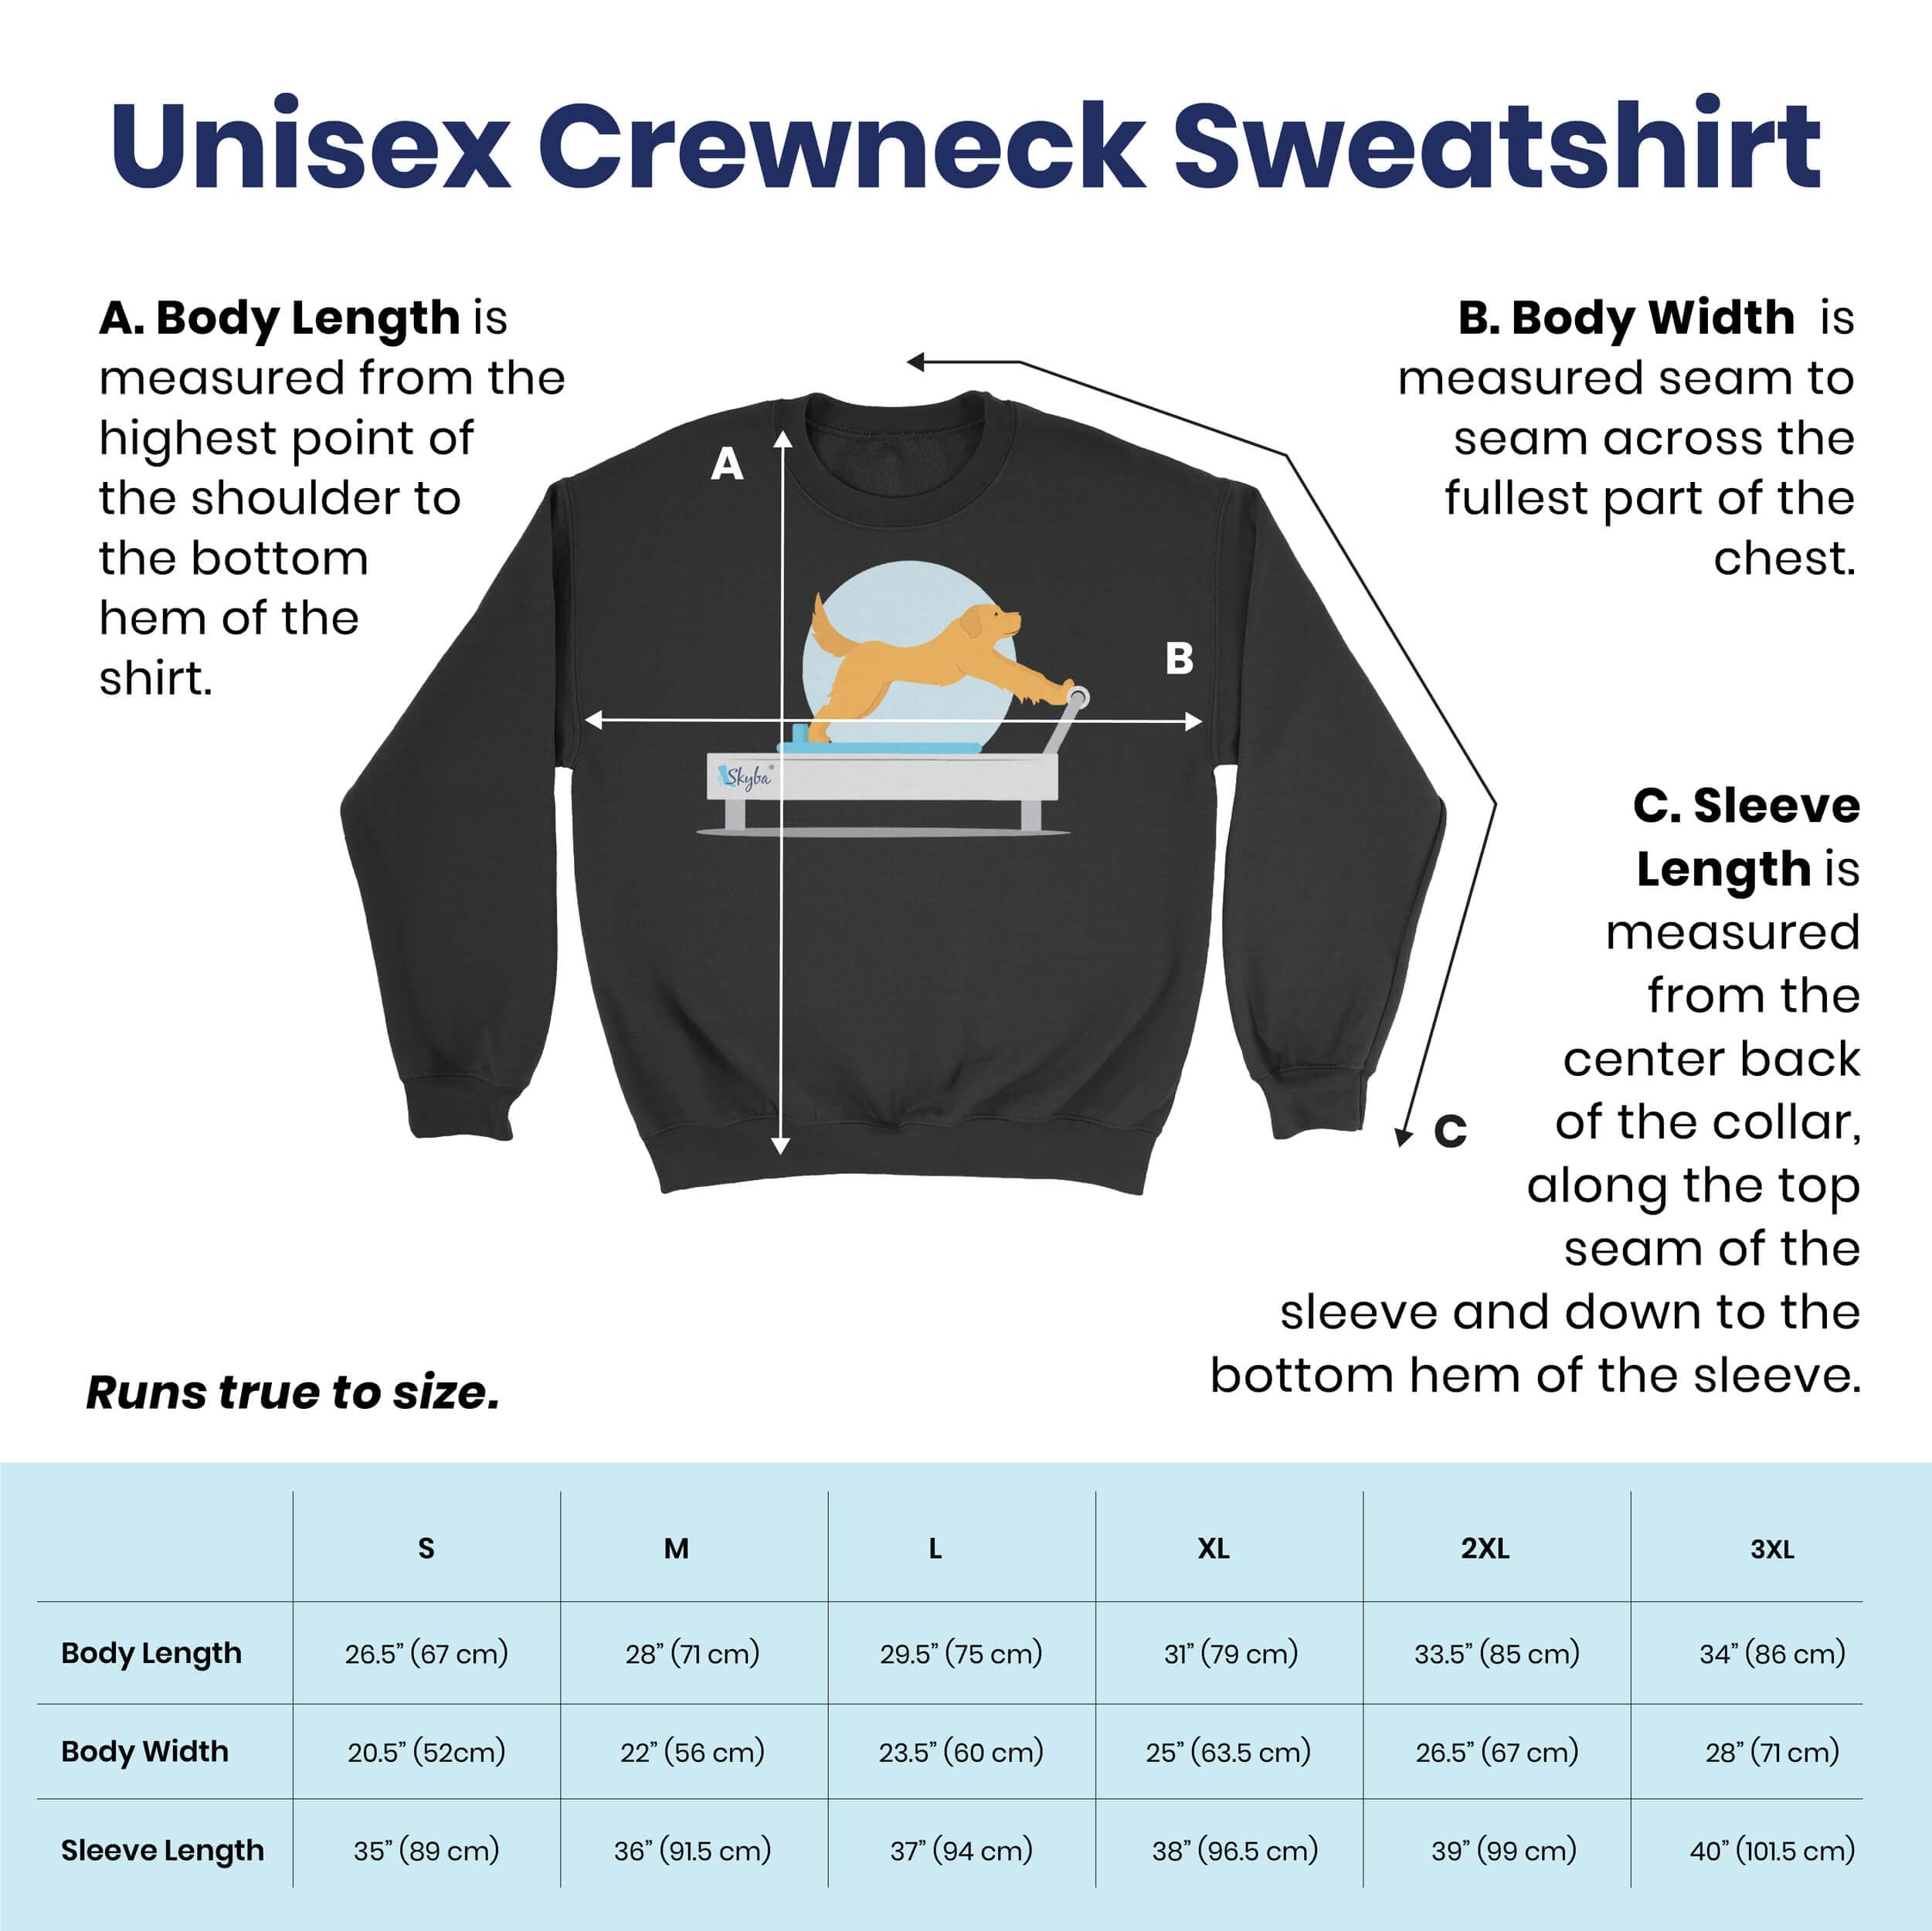 Panda Standing Side Split - Cozy Crewneck Sweatshirt Skyba Sweatshirt